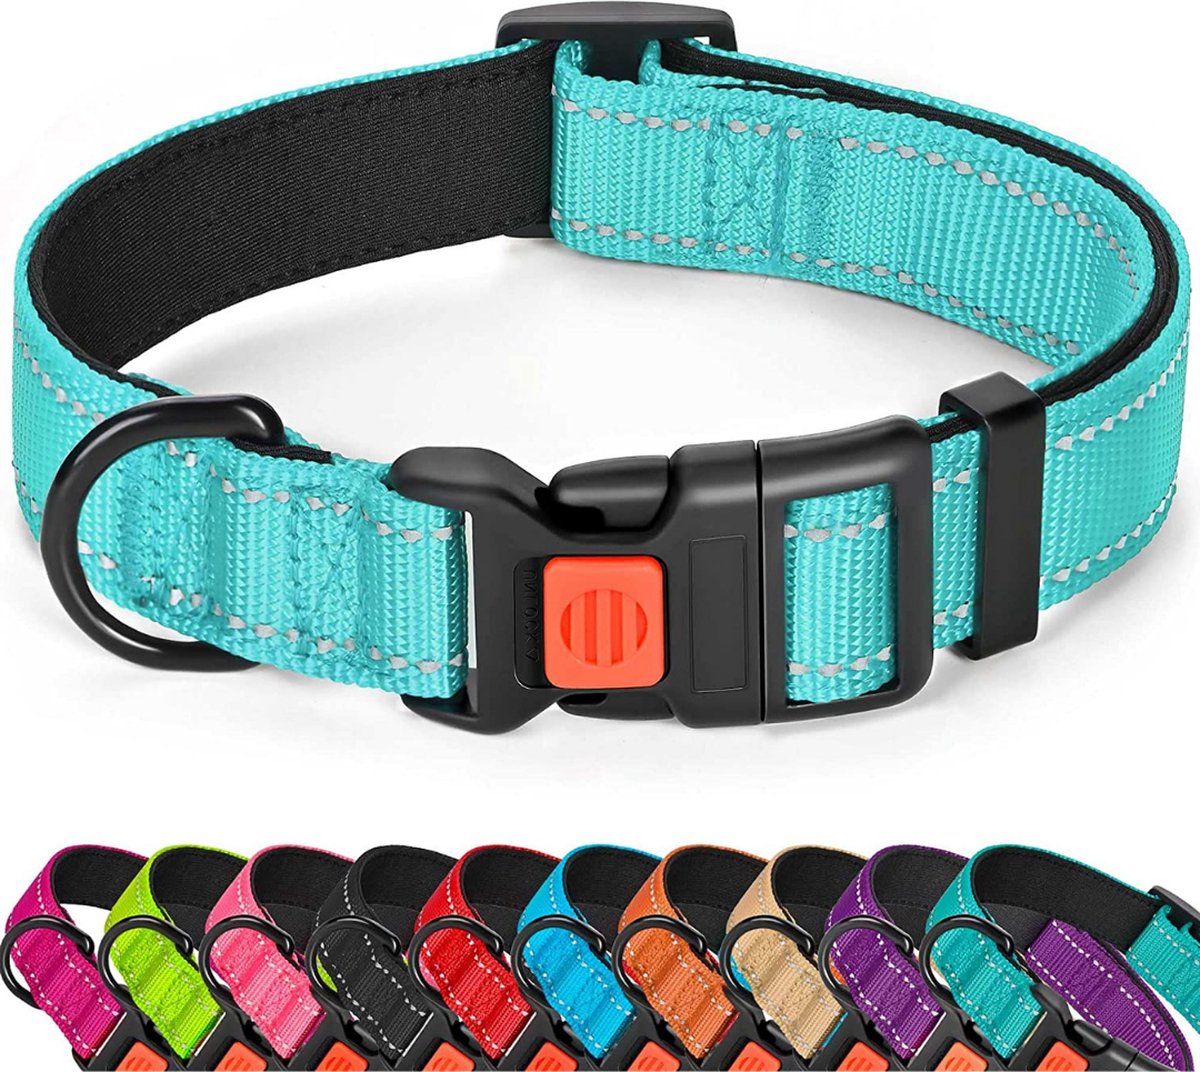 Halsband hond - reflecterend - turquoise - maat L - oersterk - waterdicht - hondenhalsband - met veiligheidssluiting - geschikt voor iedere hondenriem - voor grote honden - Sharon B